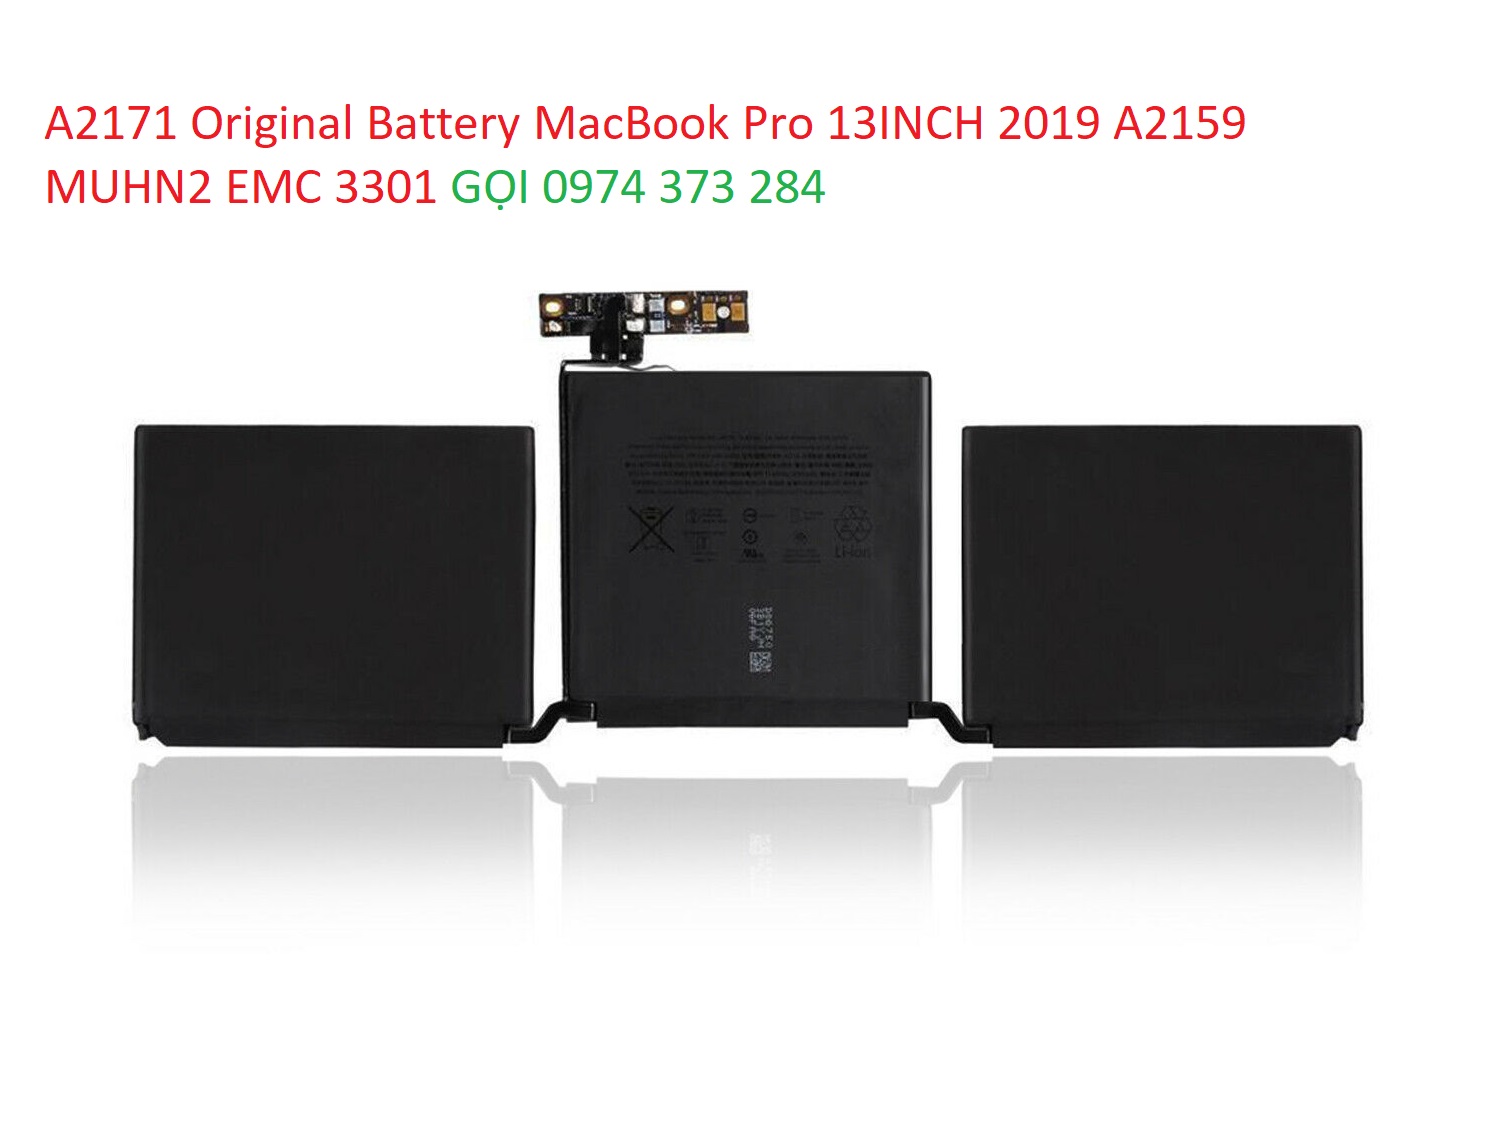 A2171 Original Battery MacBook Pro 13INCH 2019 A2159 MUHN2 EMC 3301